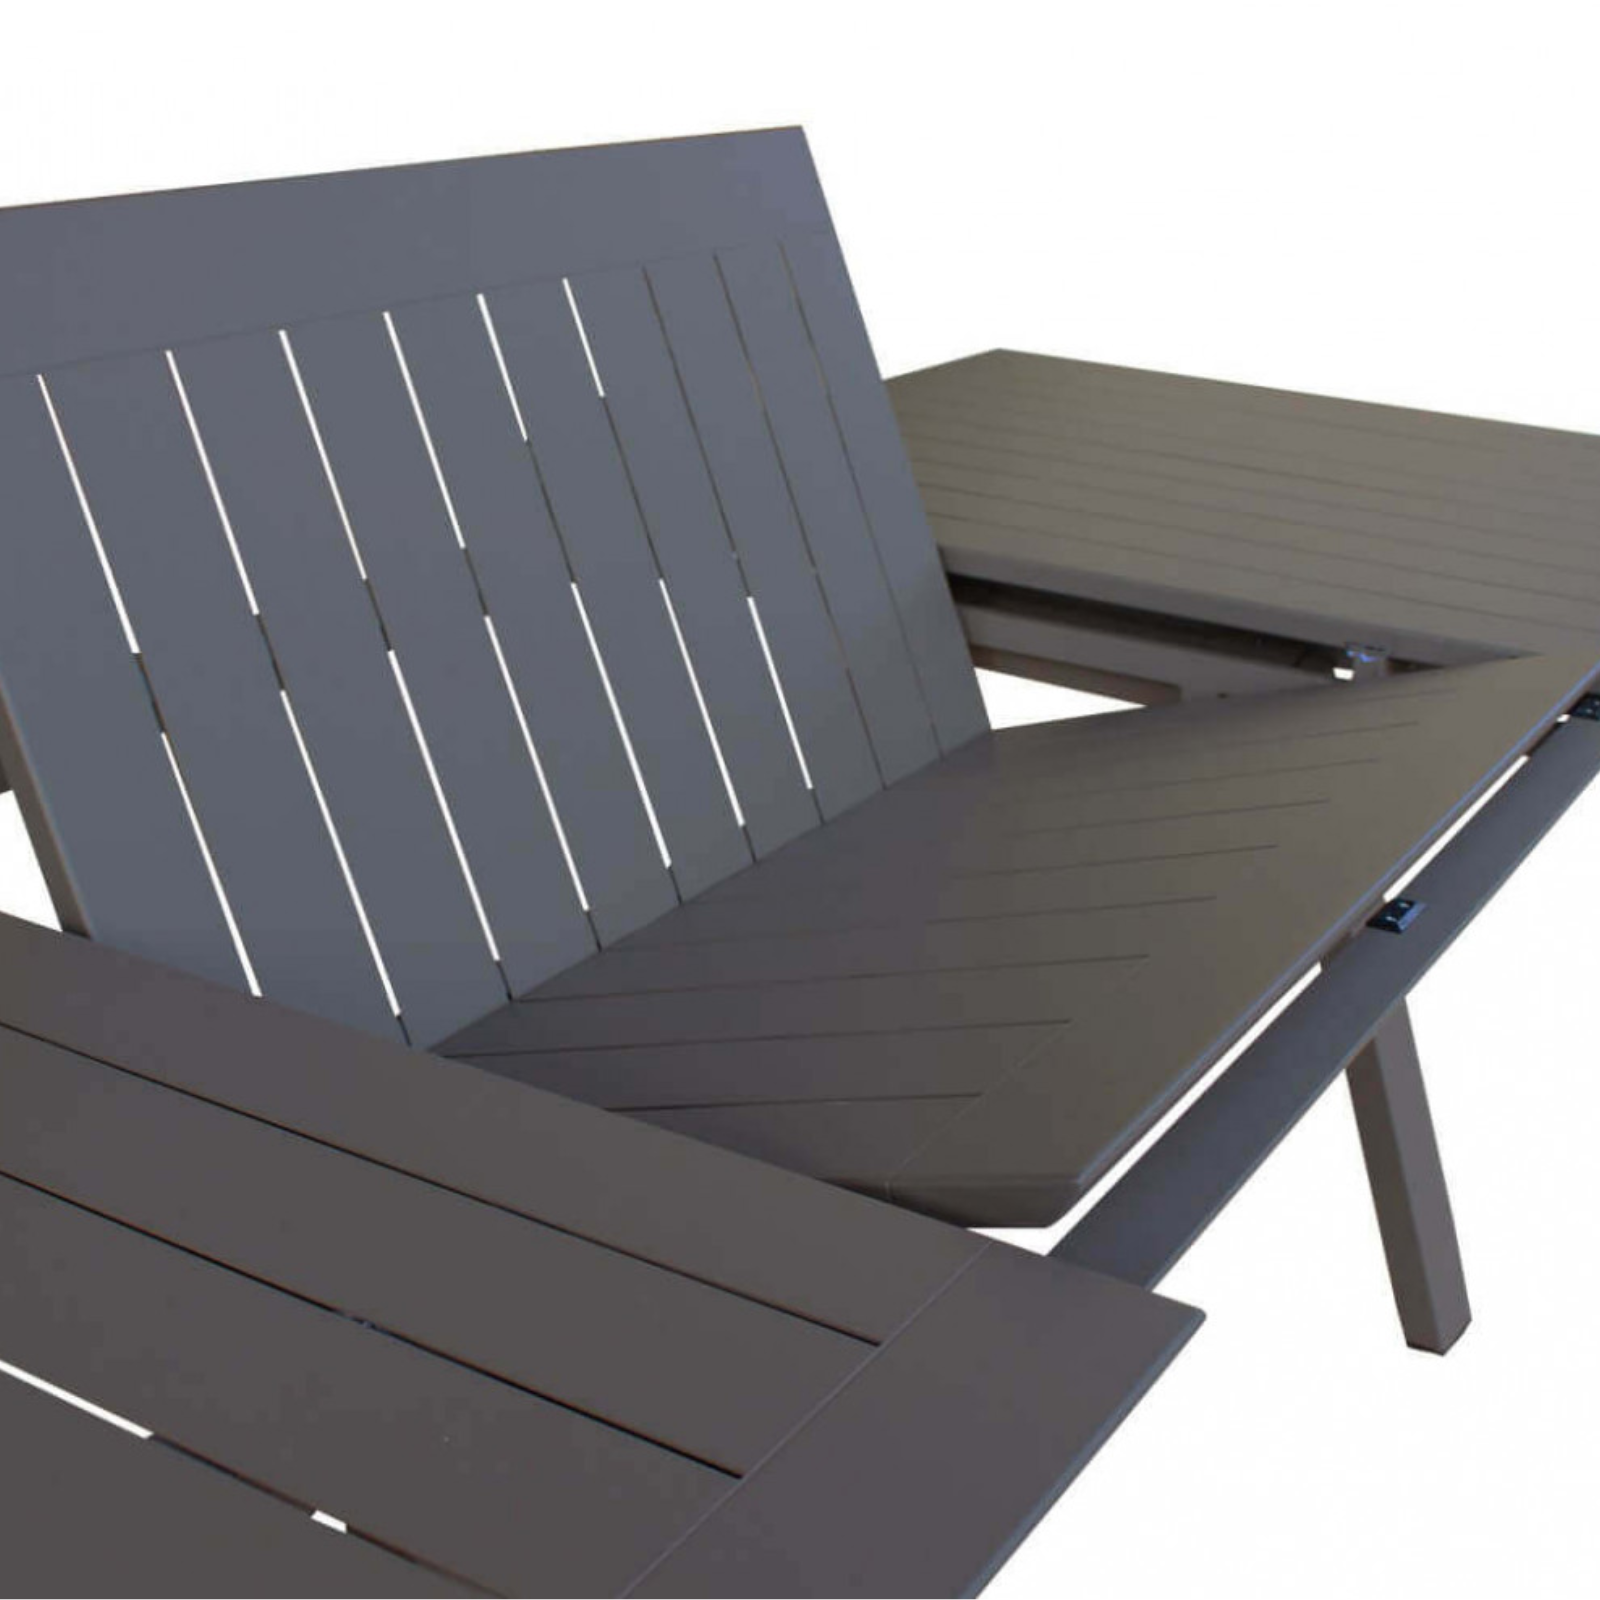 Tavolo allungabile 200/300 design moderno in alluminio antracite da esterno o interno - Zante